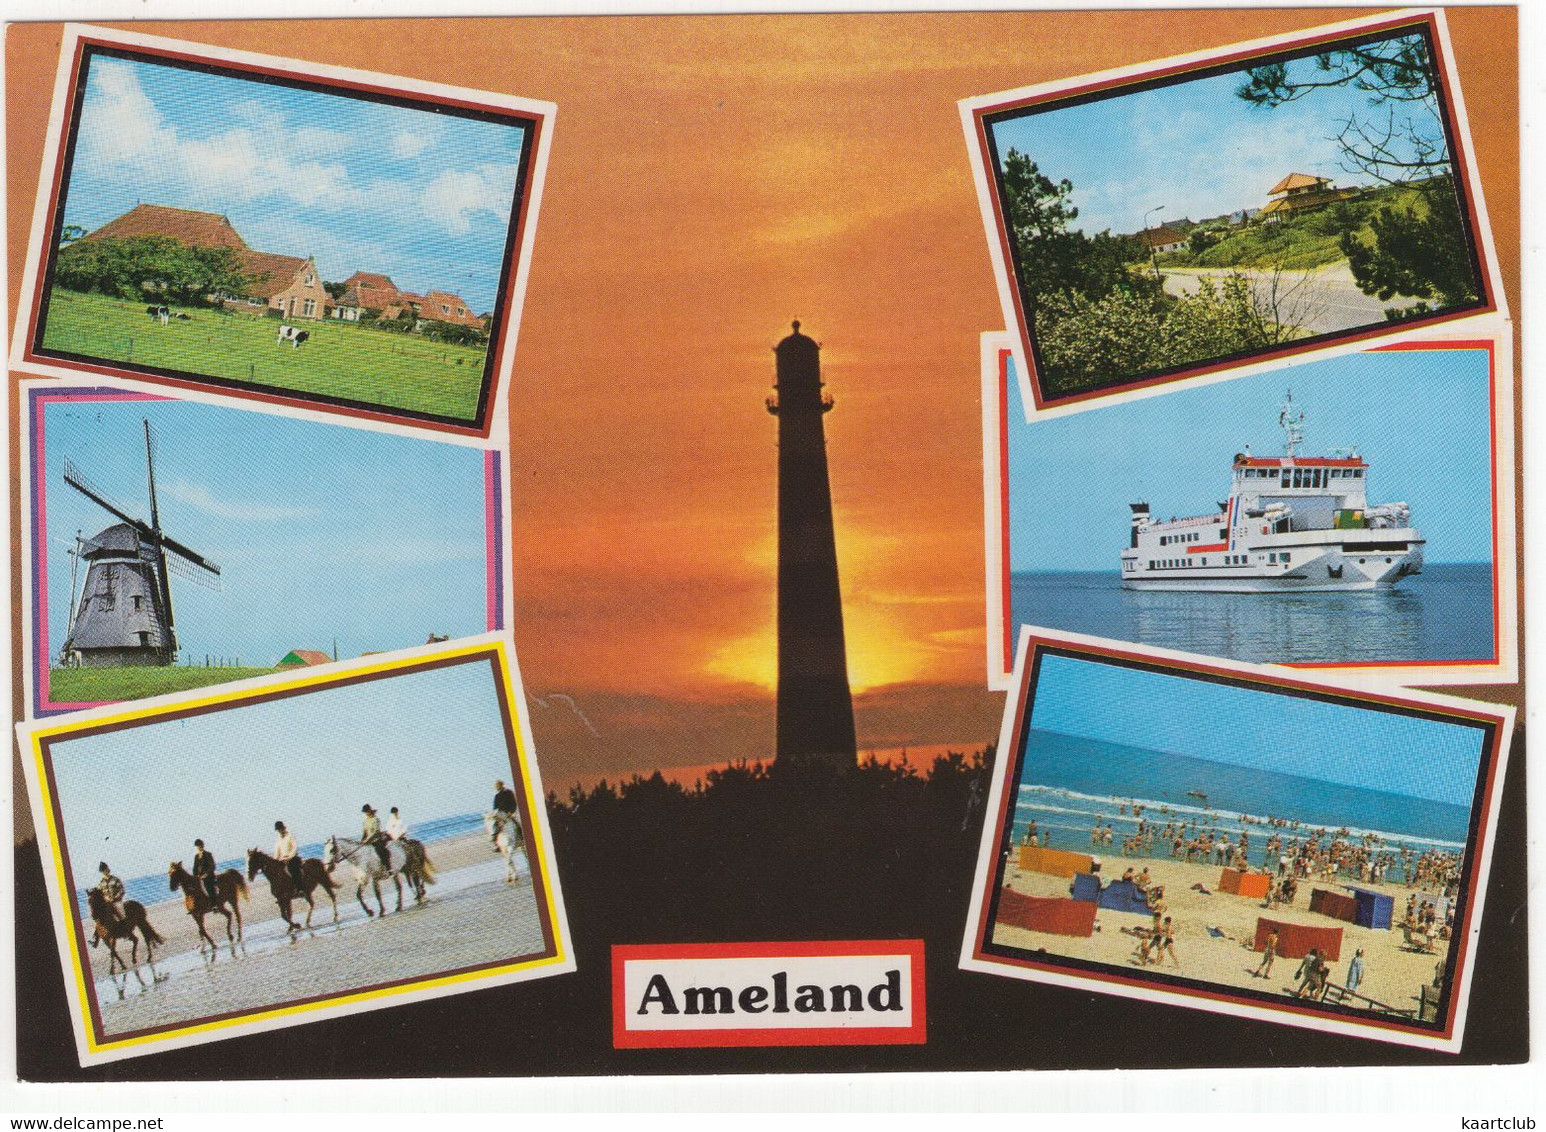 Ameland - (Wadden, Nederland / Holland) - AMD 64 - O.a. Vuurtoren, Veerboot, Molen - Ameland